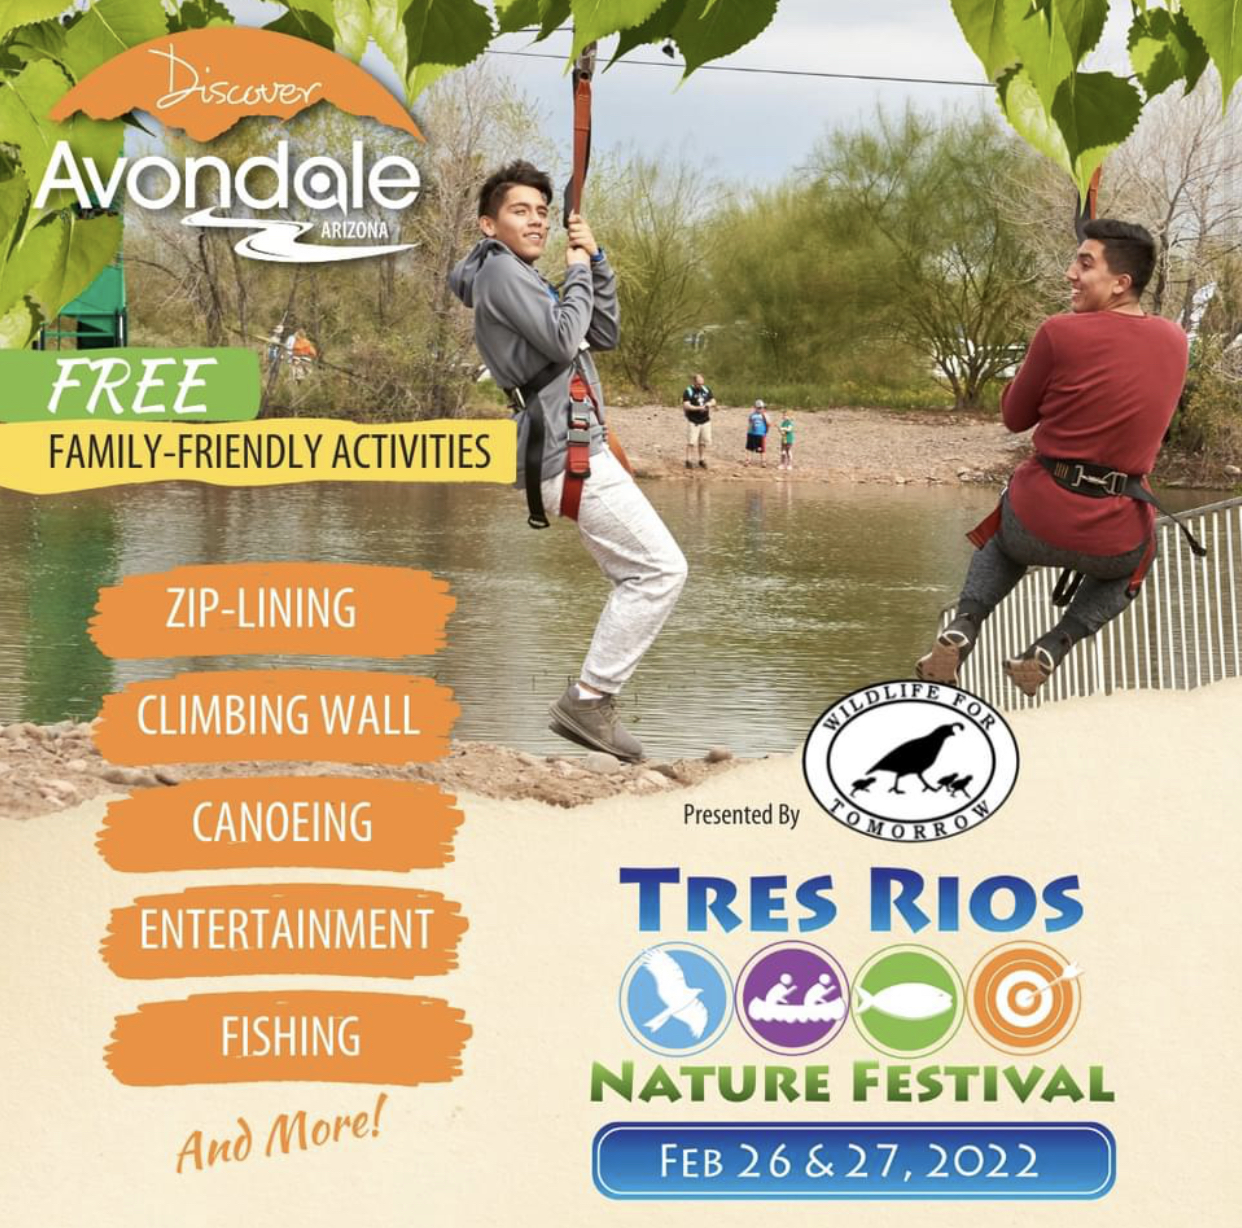 Tres Rios Nature Festival Macaroni KID SurprisePeoriaEl Mirage